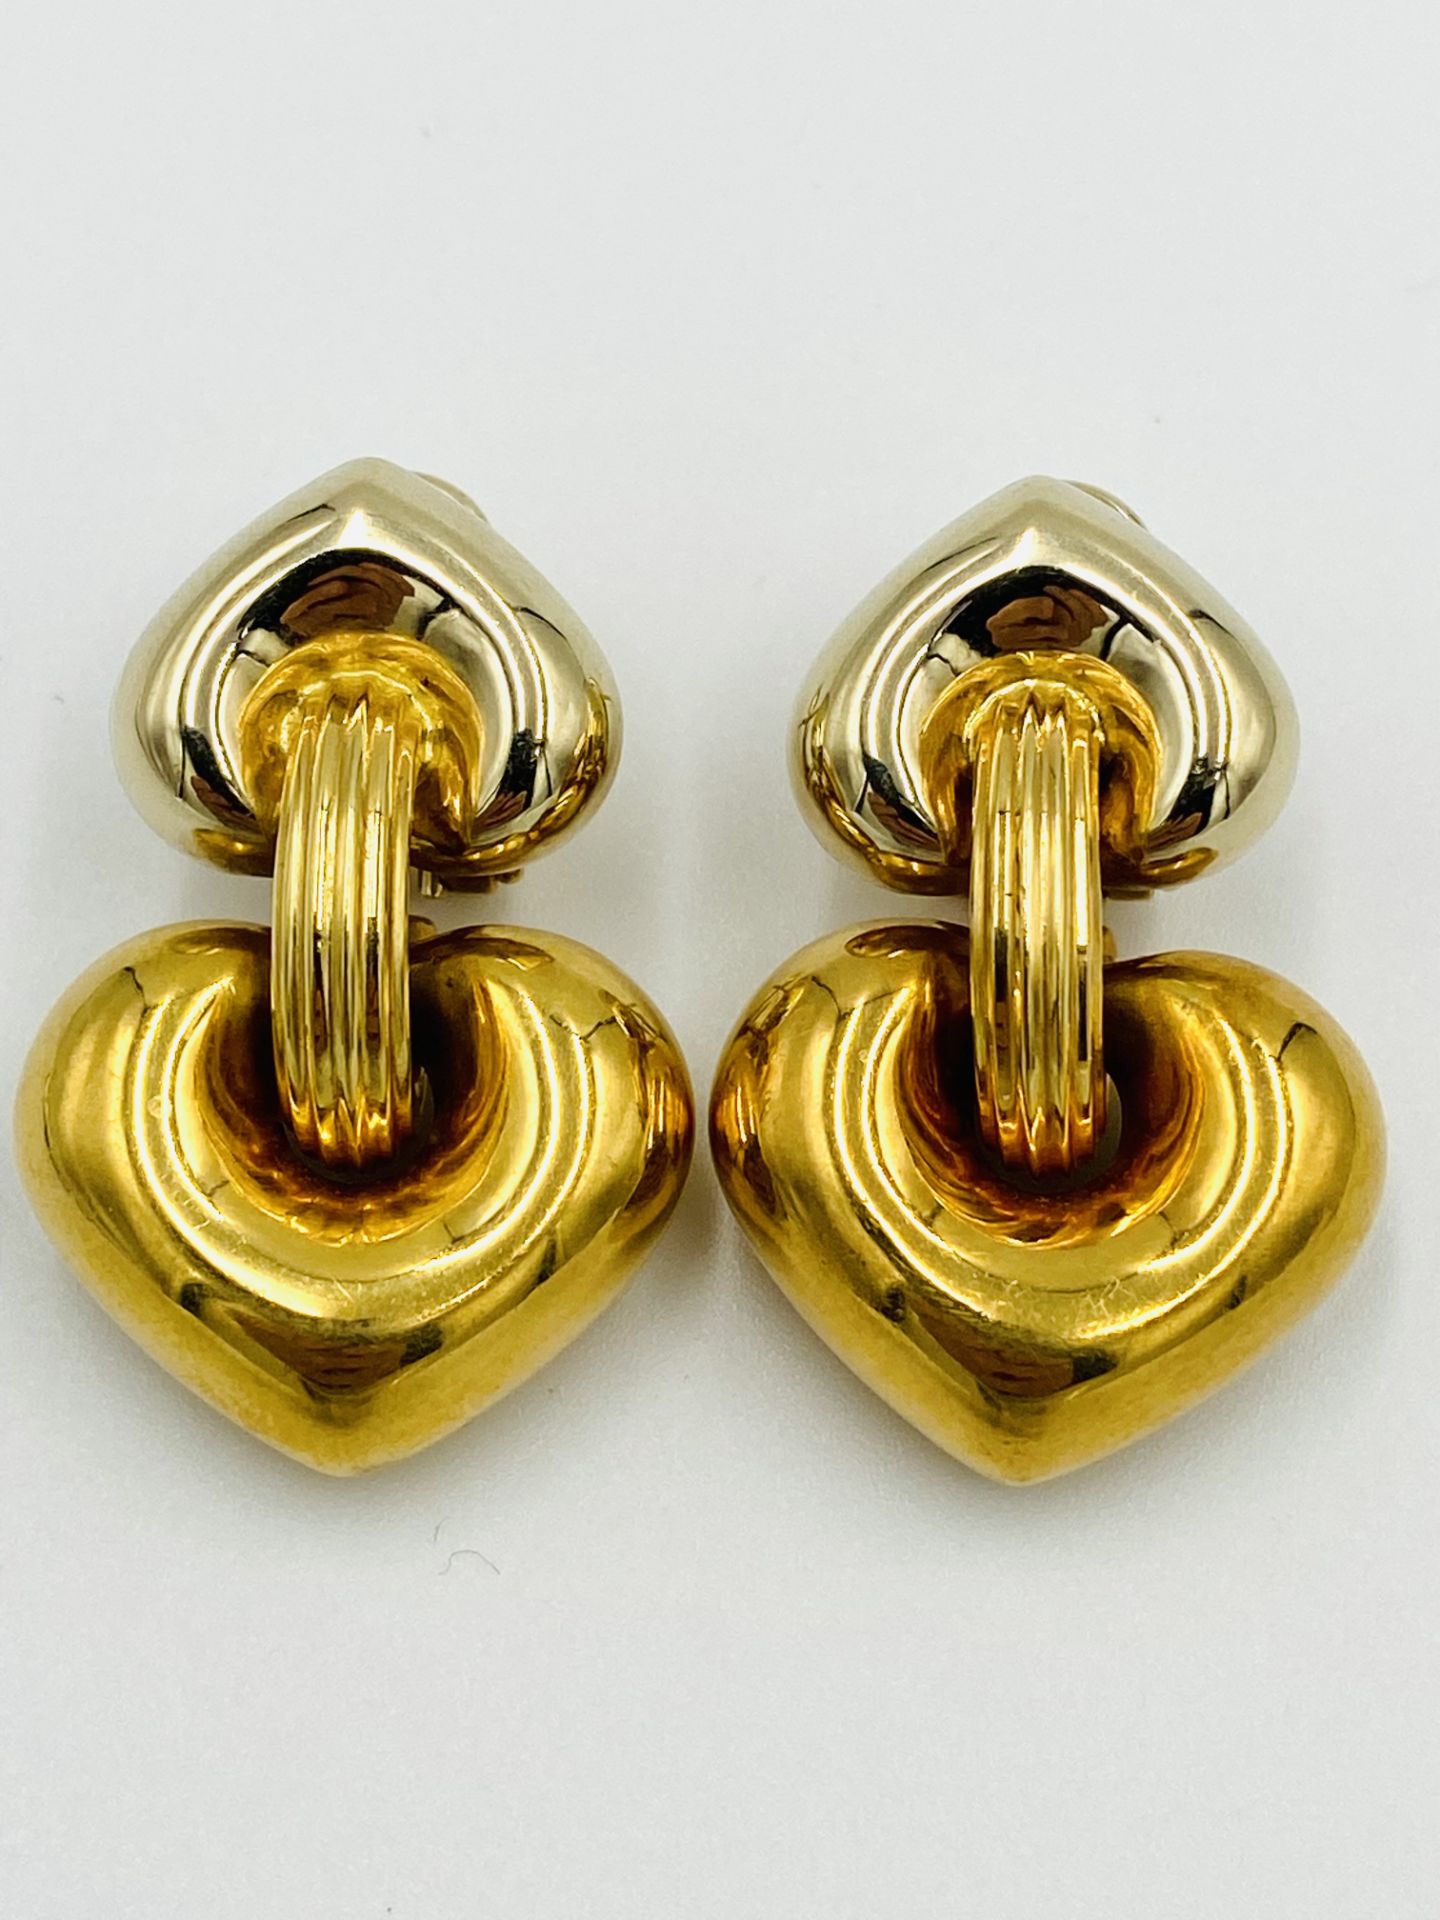 Pair of 18ct gold earrings